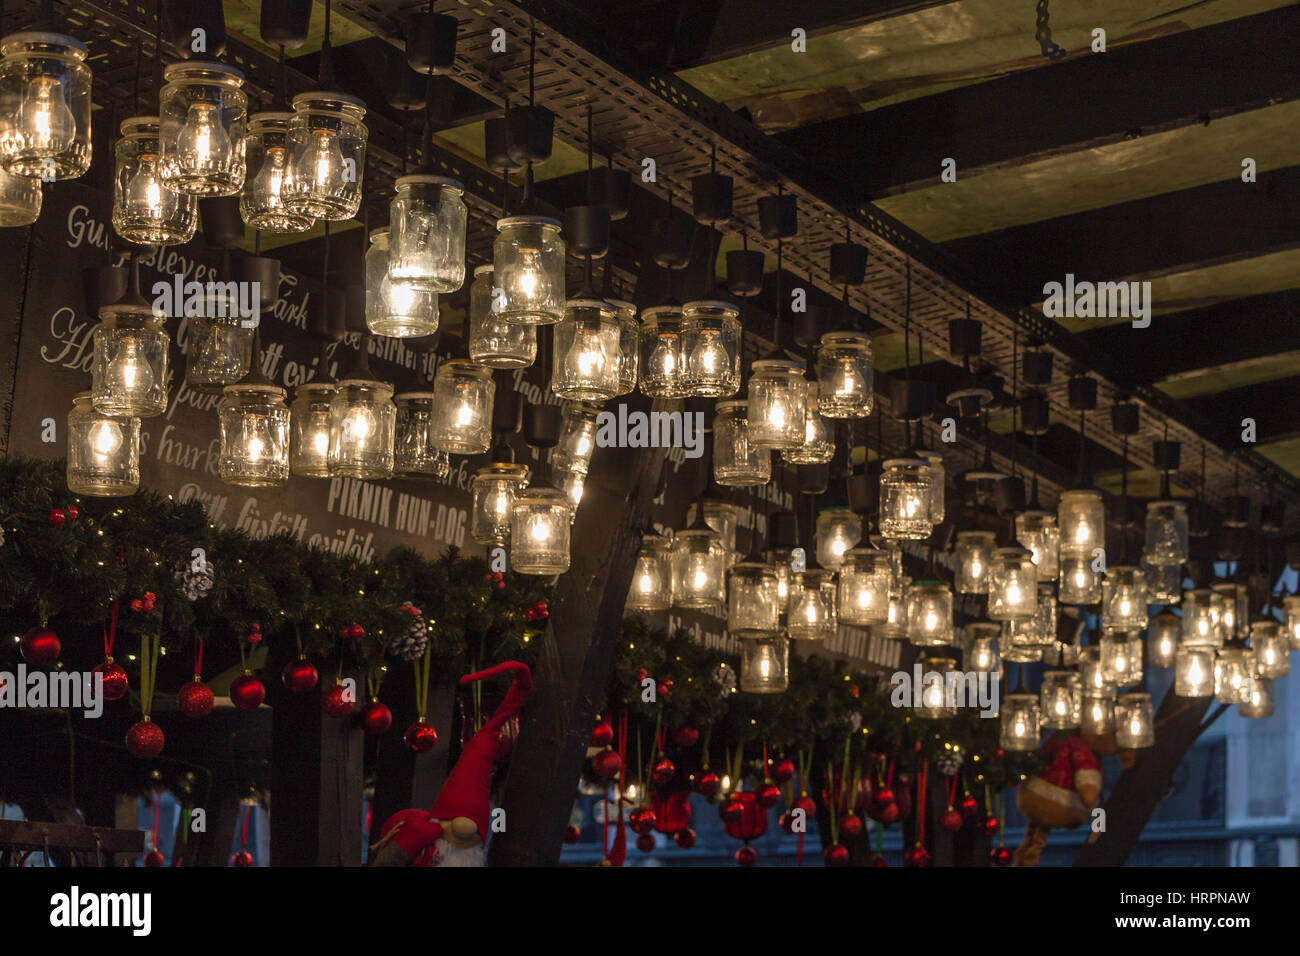 Dekorative Glühbirnen in Gläsern an der Budapester Weihnachtsmarkt  Stockfotografie - Alamy